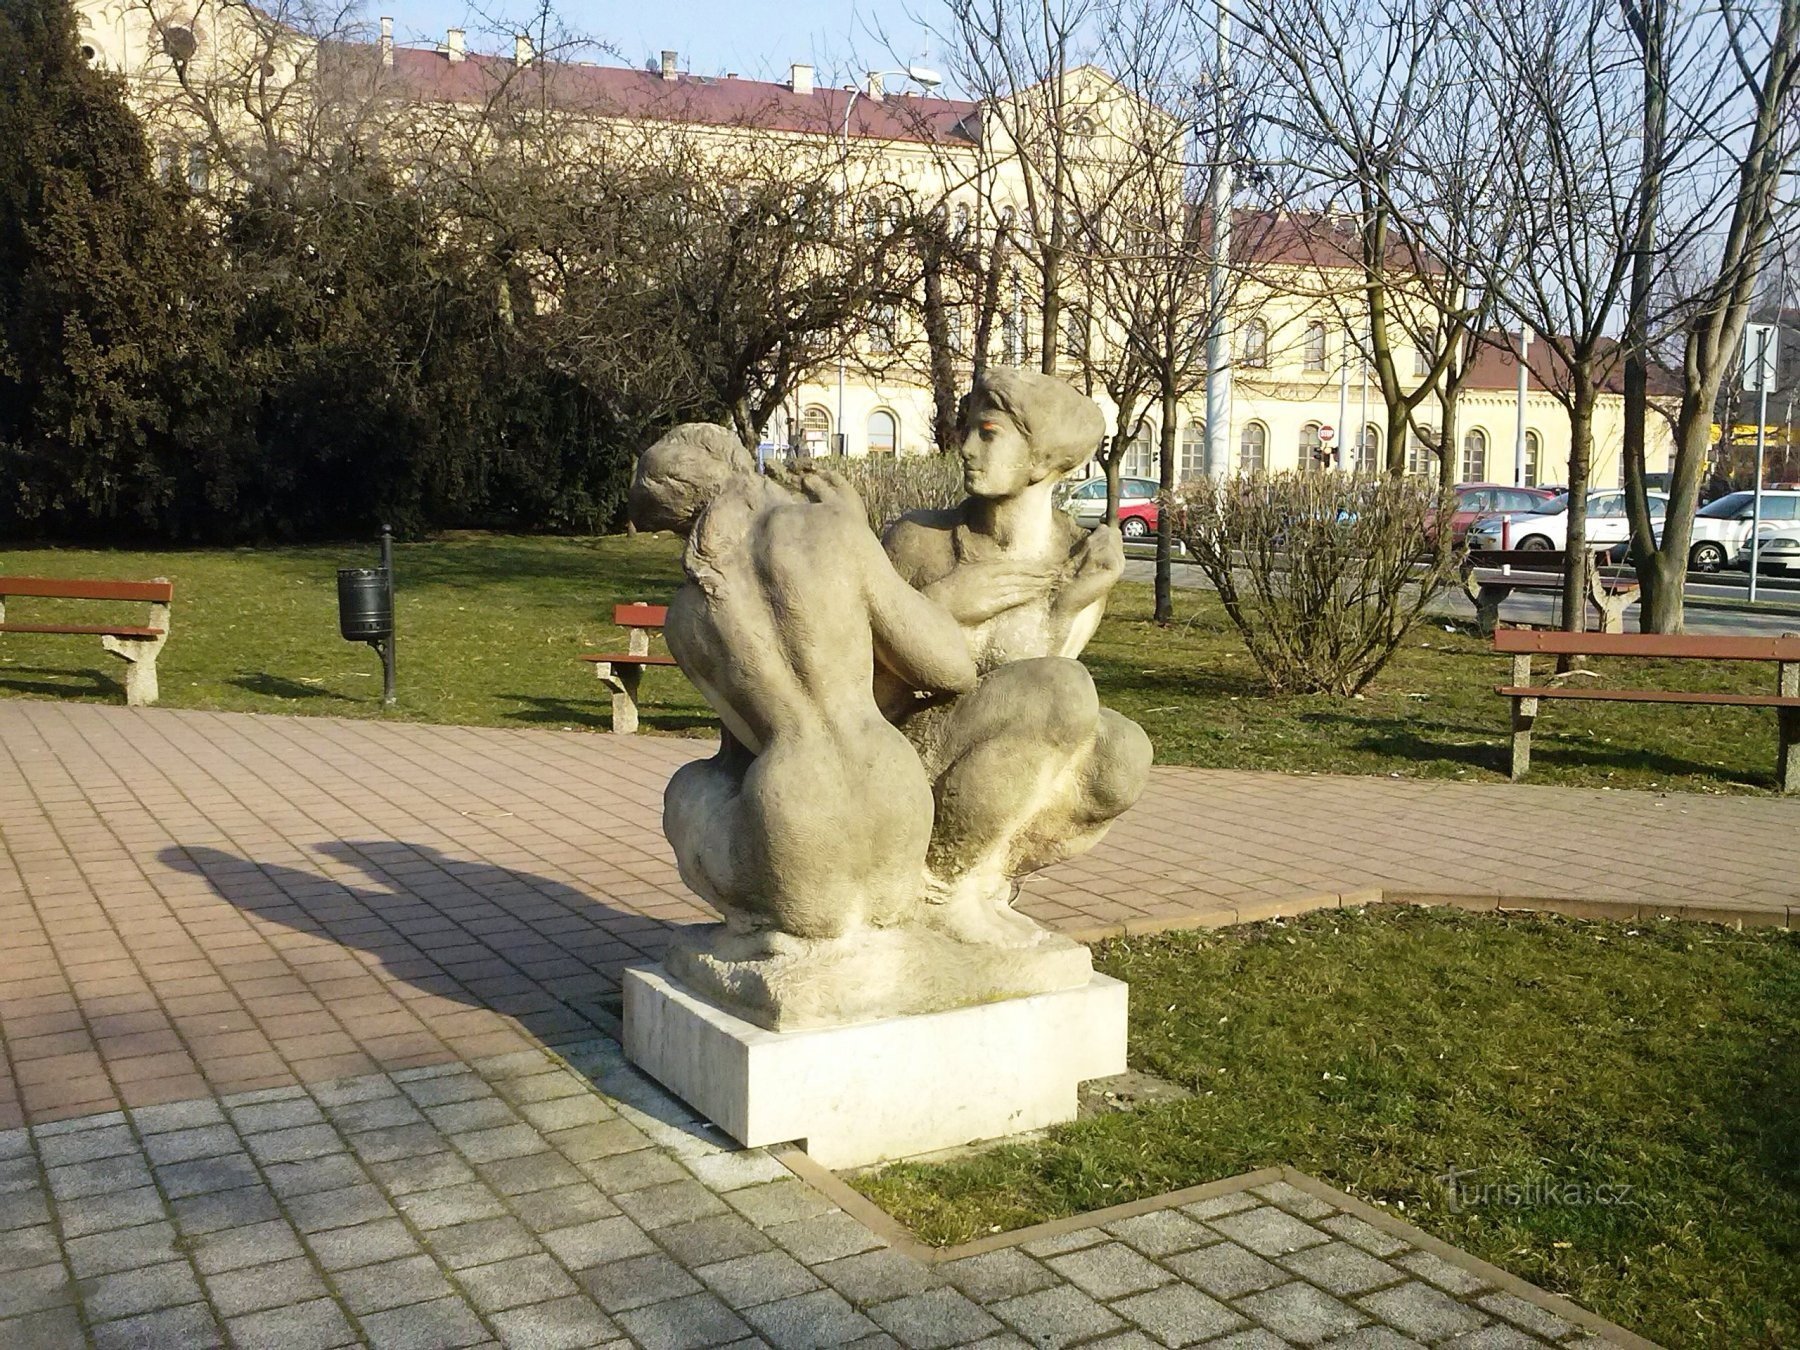 2. Αγάλματα στο πάρκο κοντά στο σταθμό